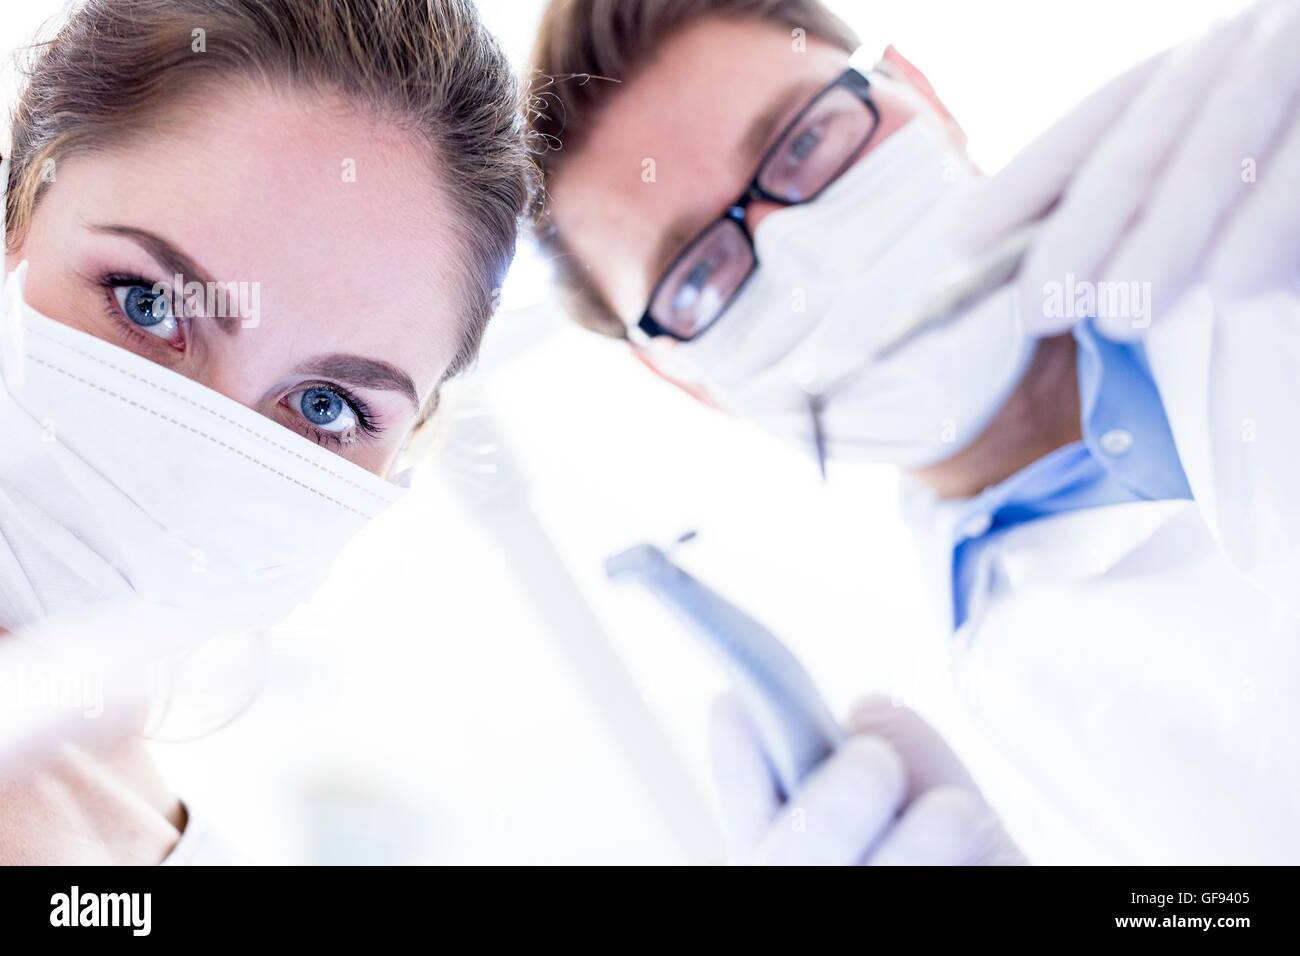 Modelo liberado. Dentista y asistente dental realizando operación dental. Foto de stock